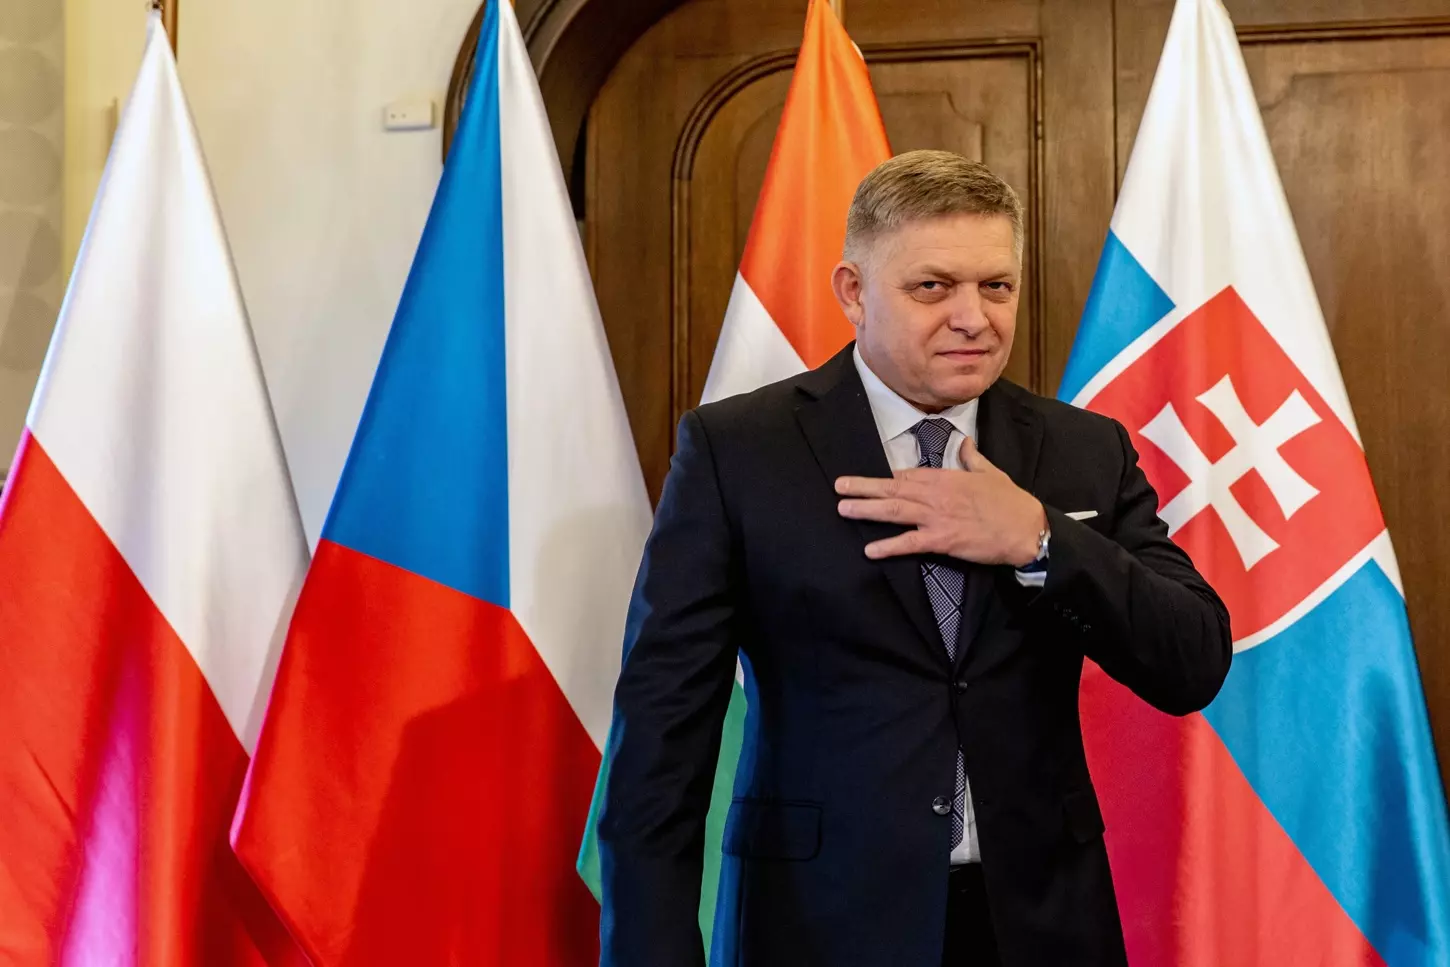 El primer ministro eslovaco, Robert Fico, recibe un pronóstico positivo tras la segunda operación